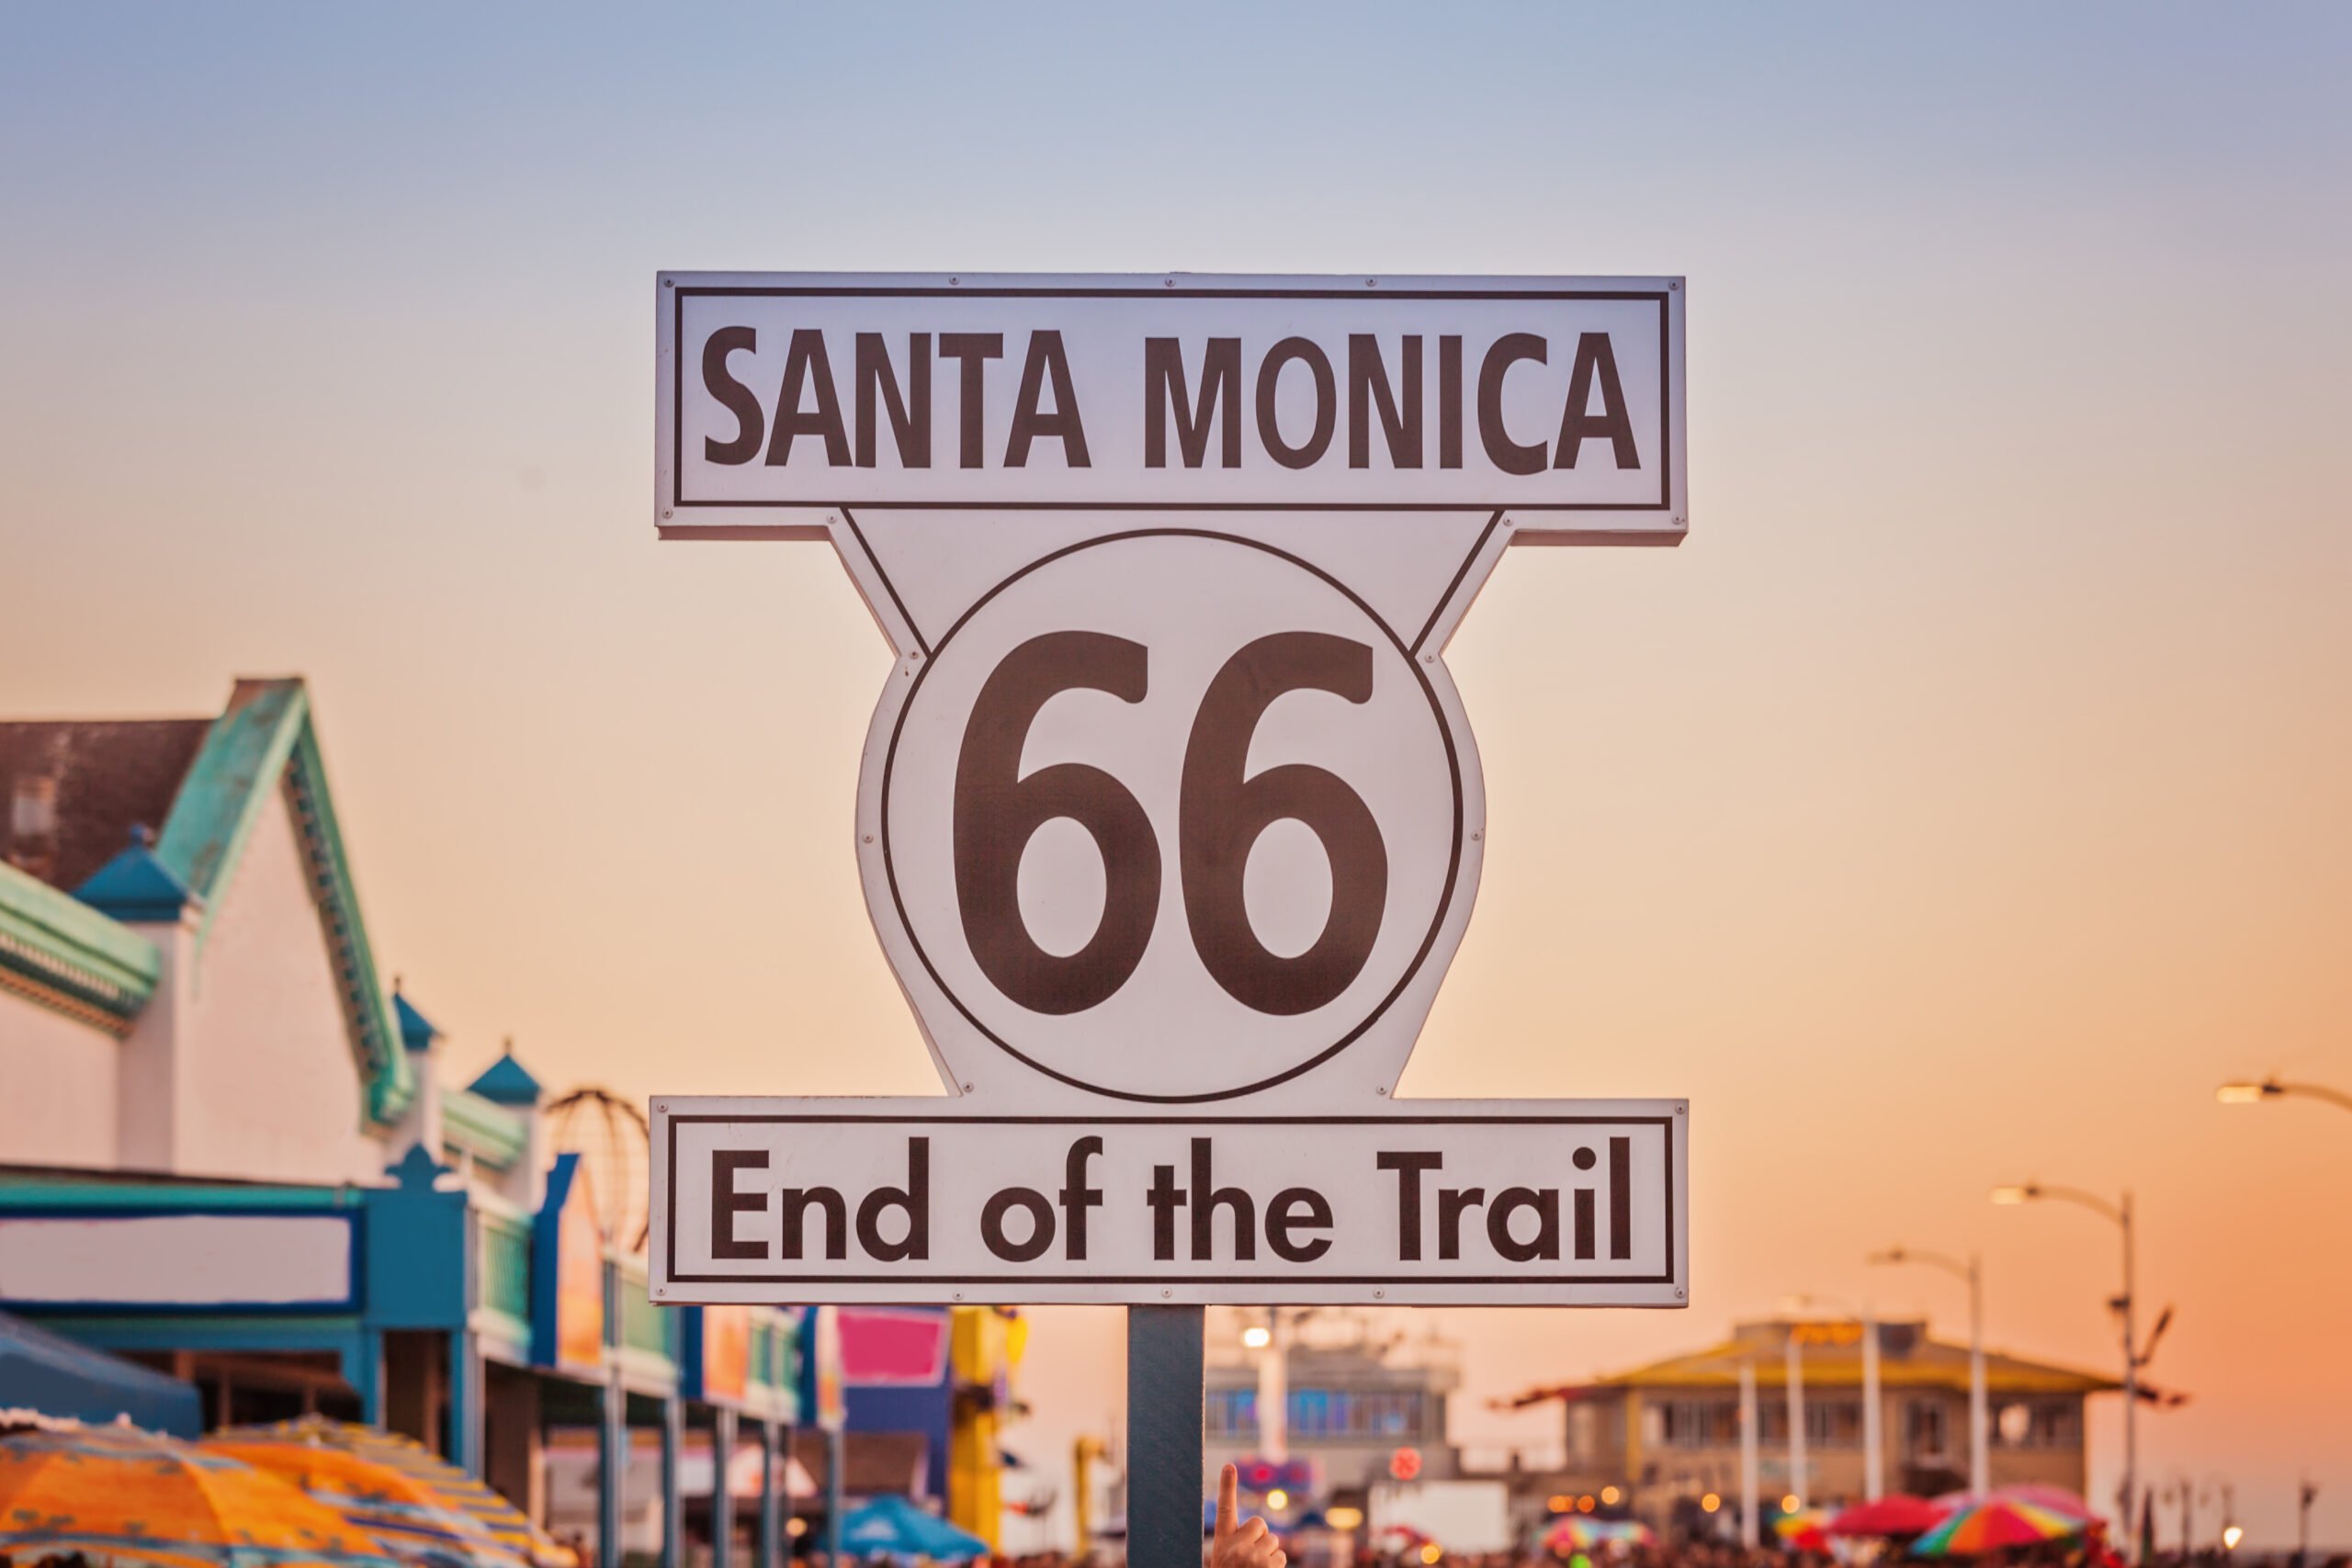 Route 66 Santa Monica end sign